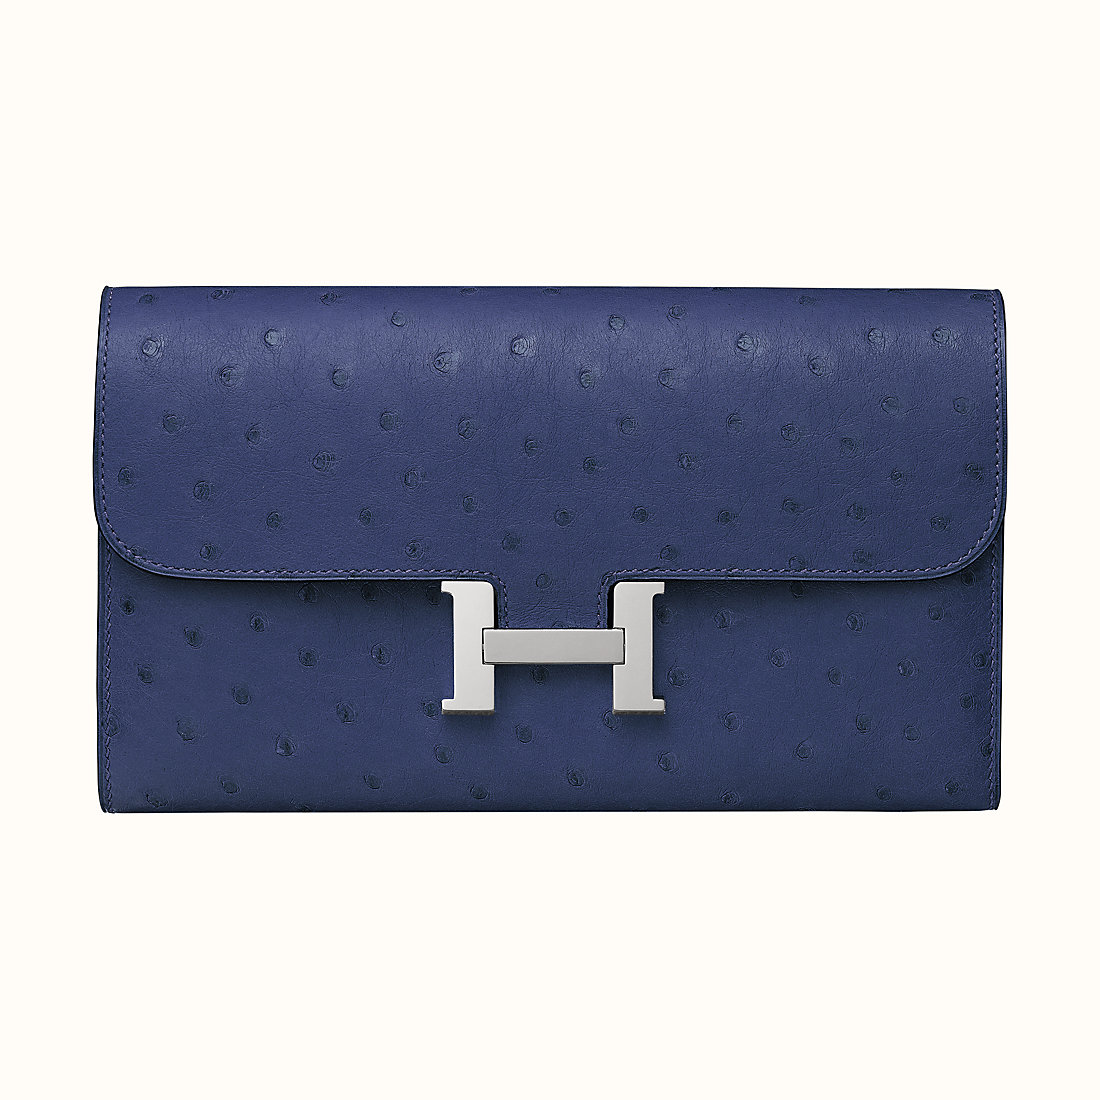 愛馬仕長錢包 Hermes Constance long wallet CK73 Bleu Saphir 寶石藍